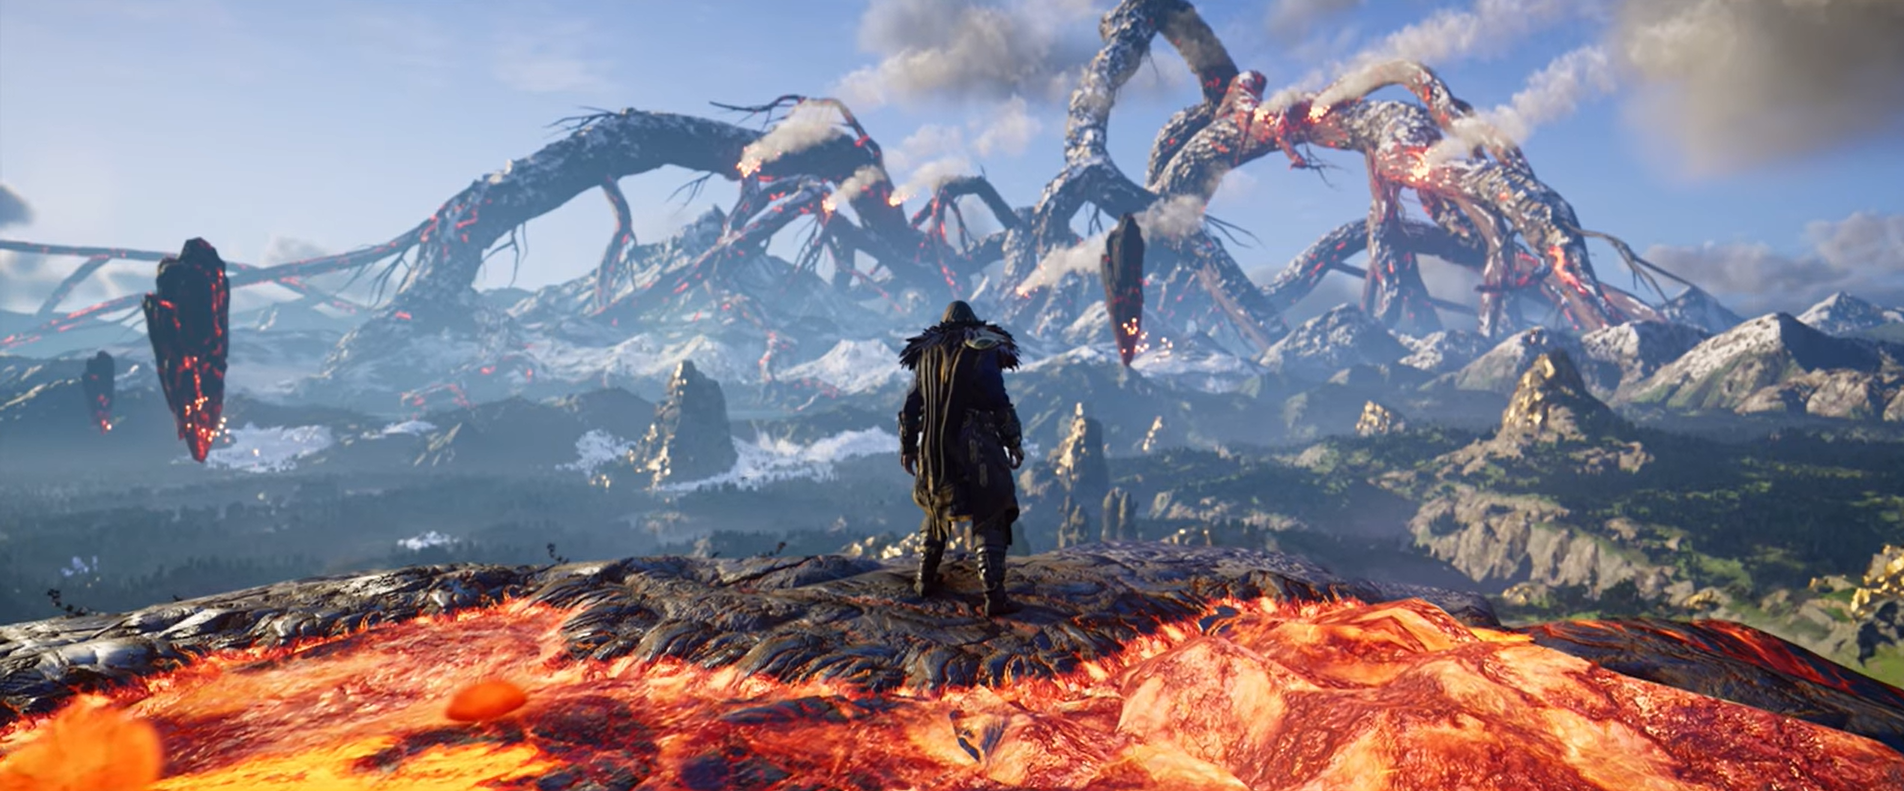 Ubisoft выпустила релизный трейлер дополнения Dawn of Ragnarok для Assassin's Creed Valhalla